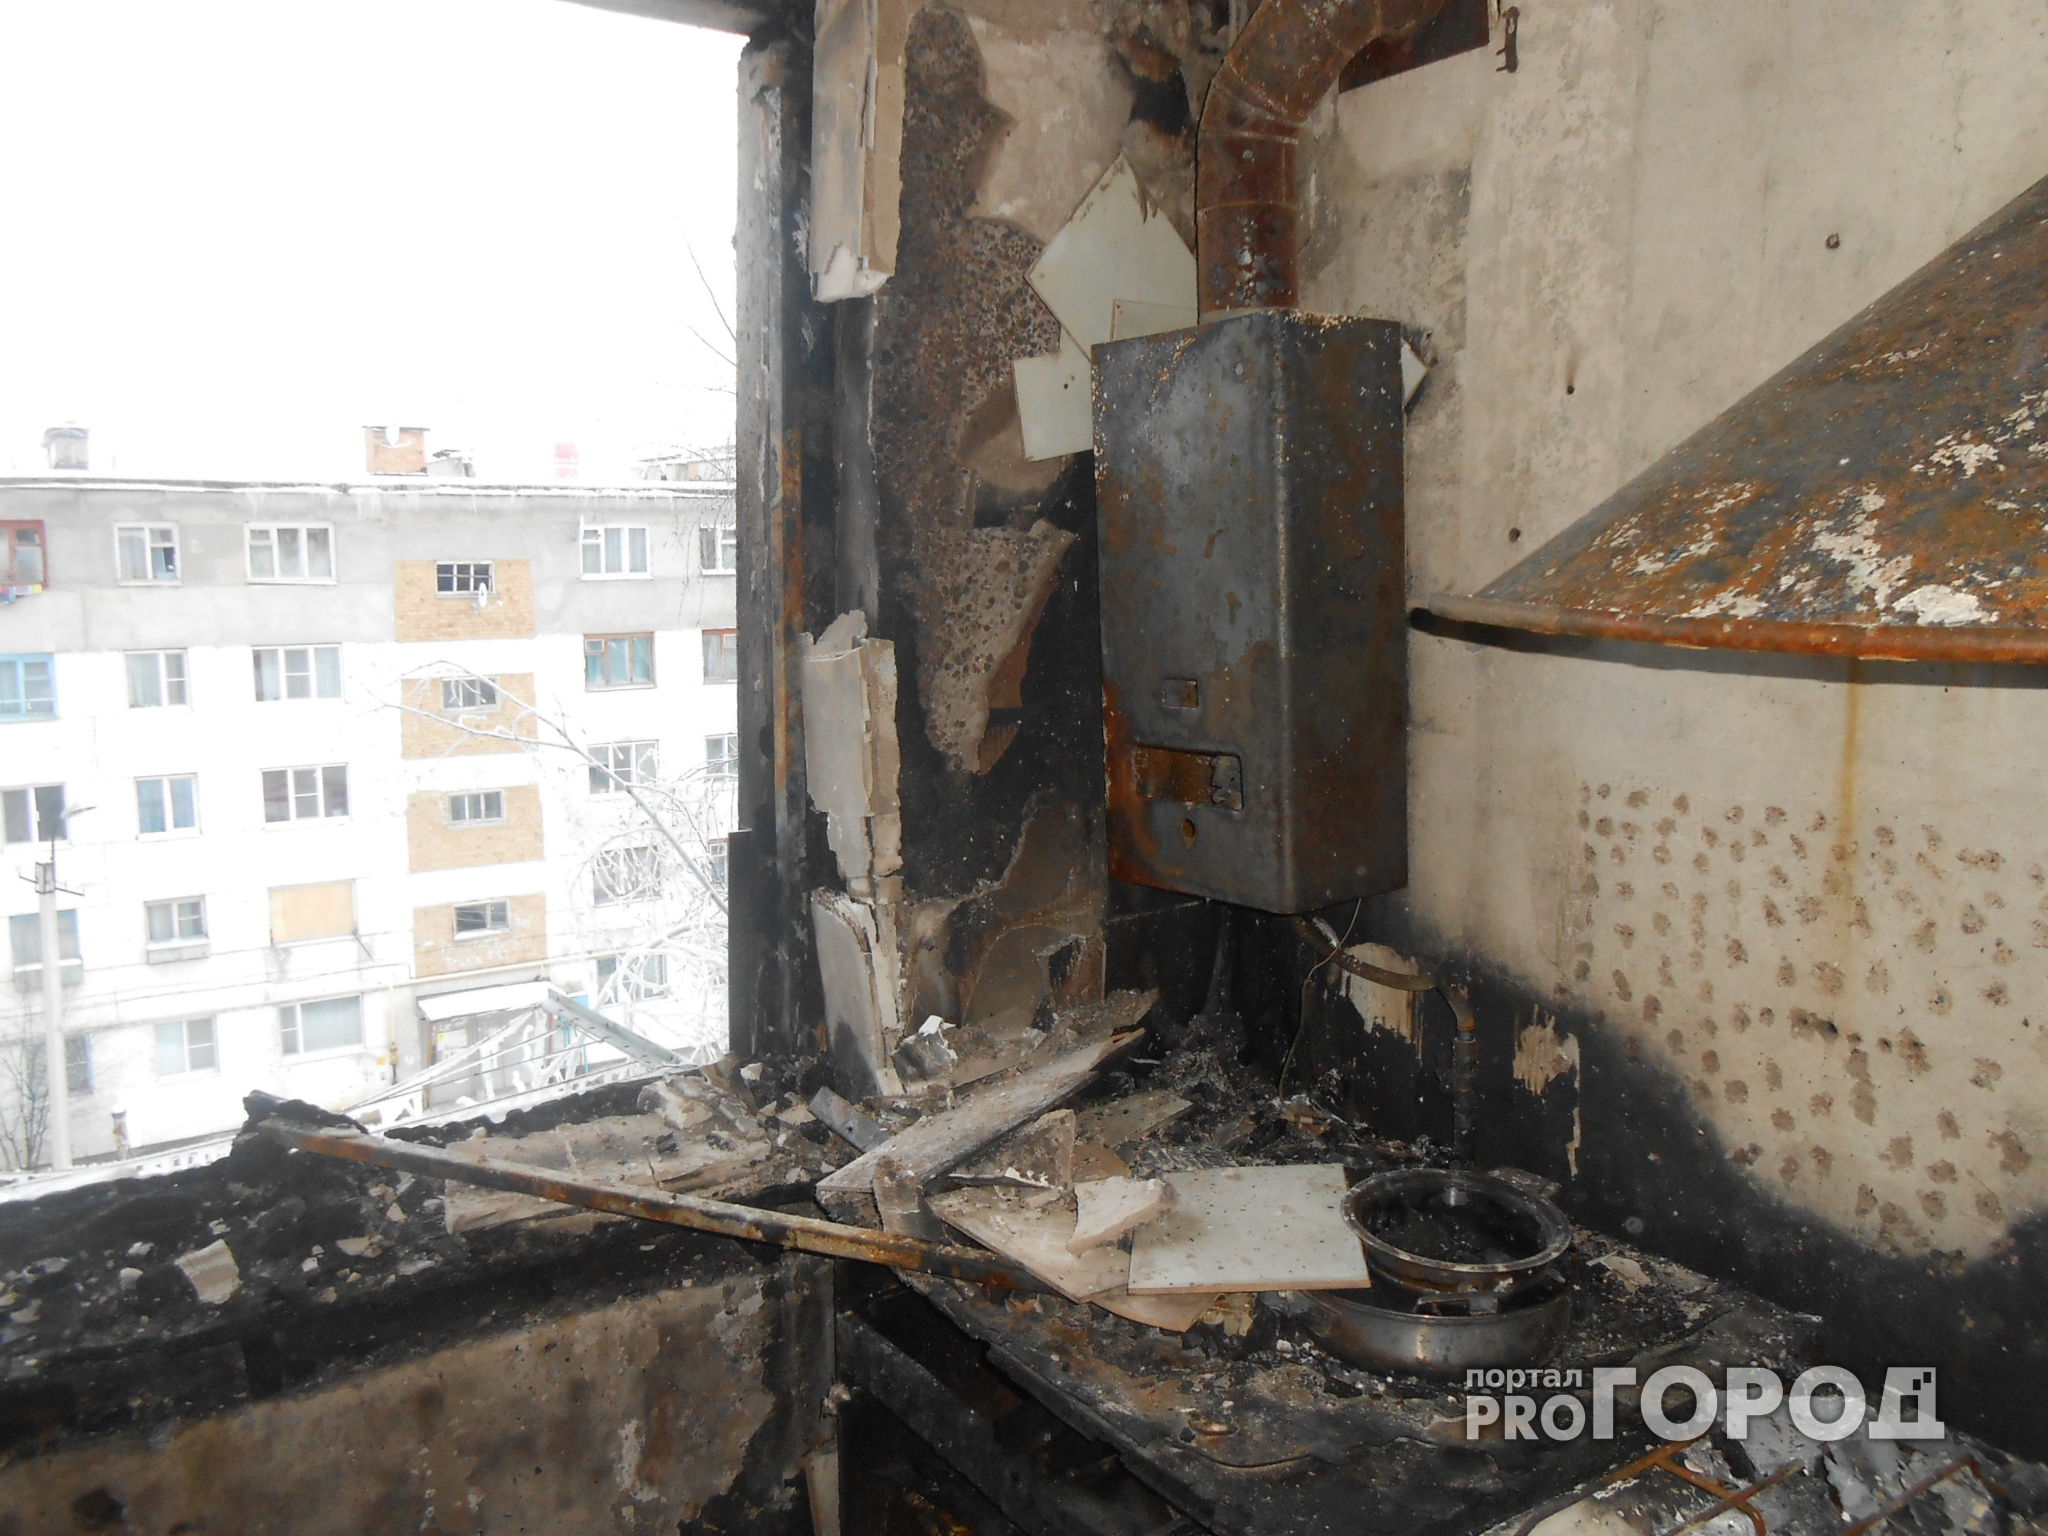 При пожаре в квартире под Ярославлем погибли две маленькие девочки